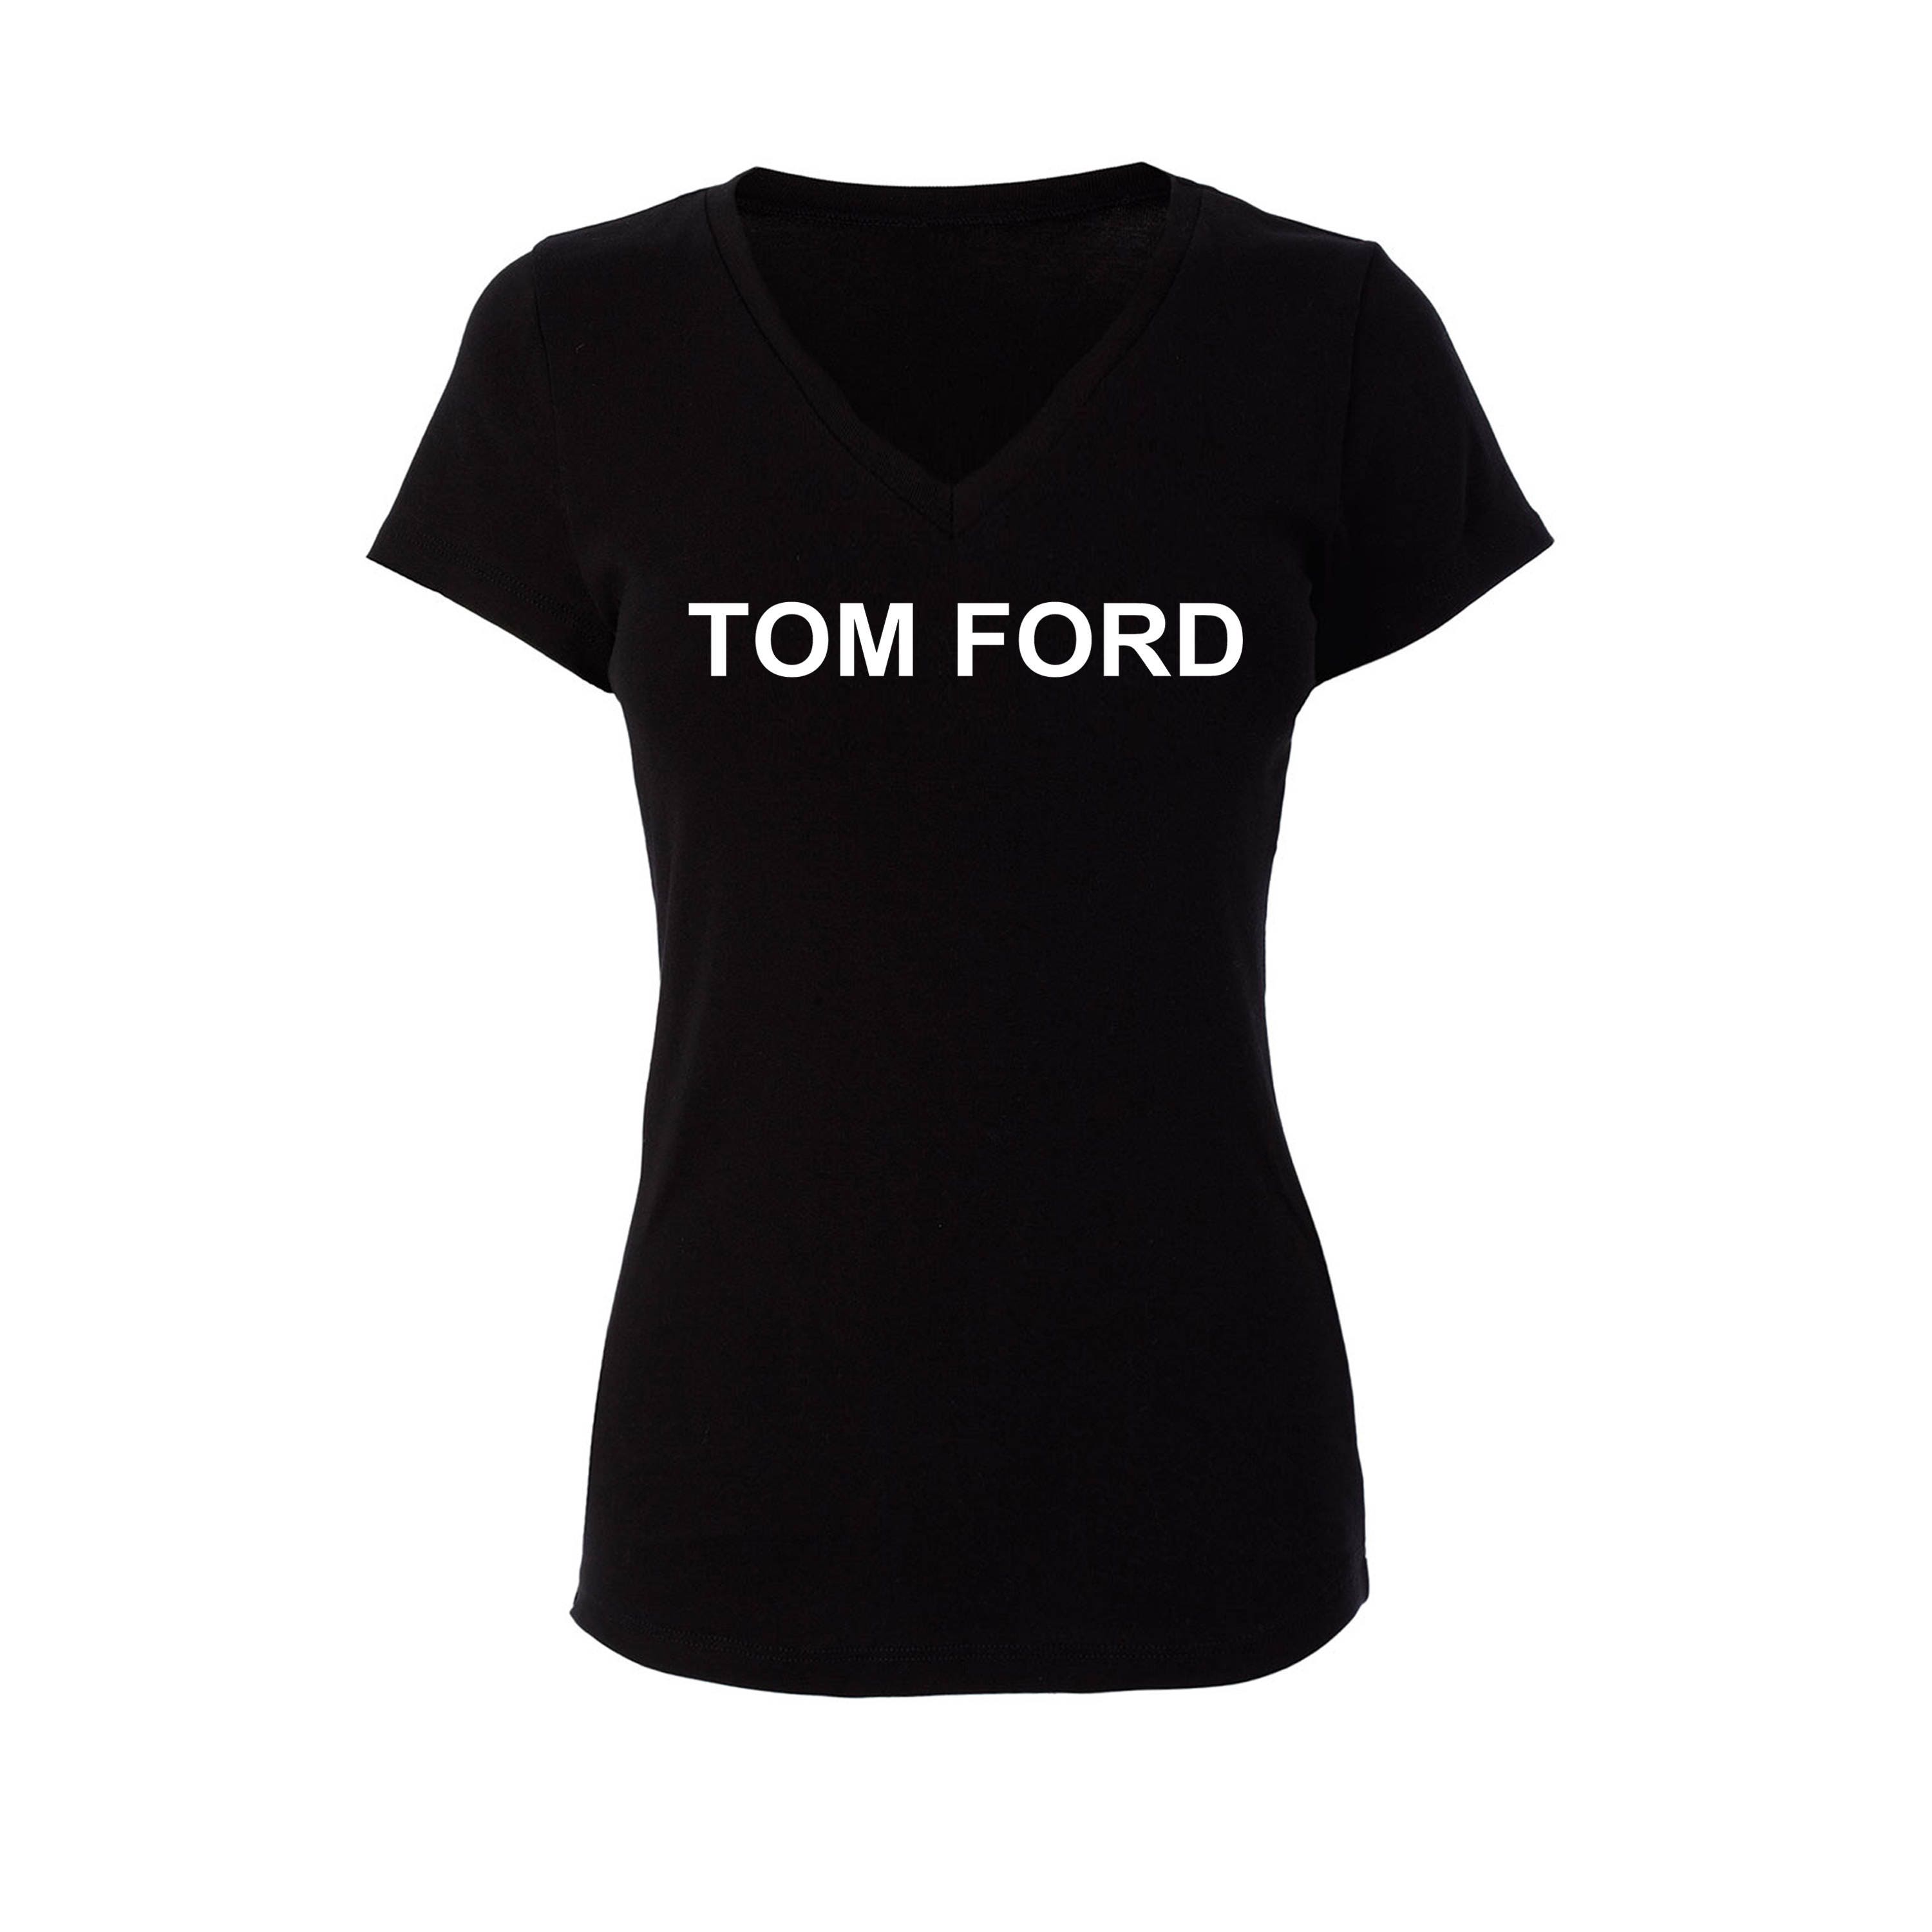 Tom Ford Inspired Black V-Neck Womans T-Shirt